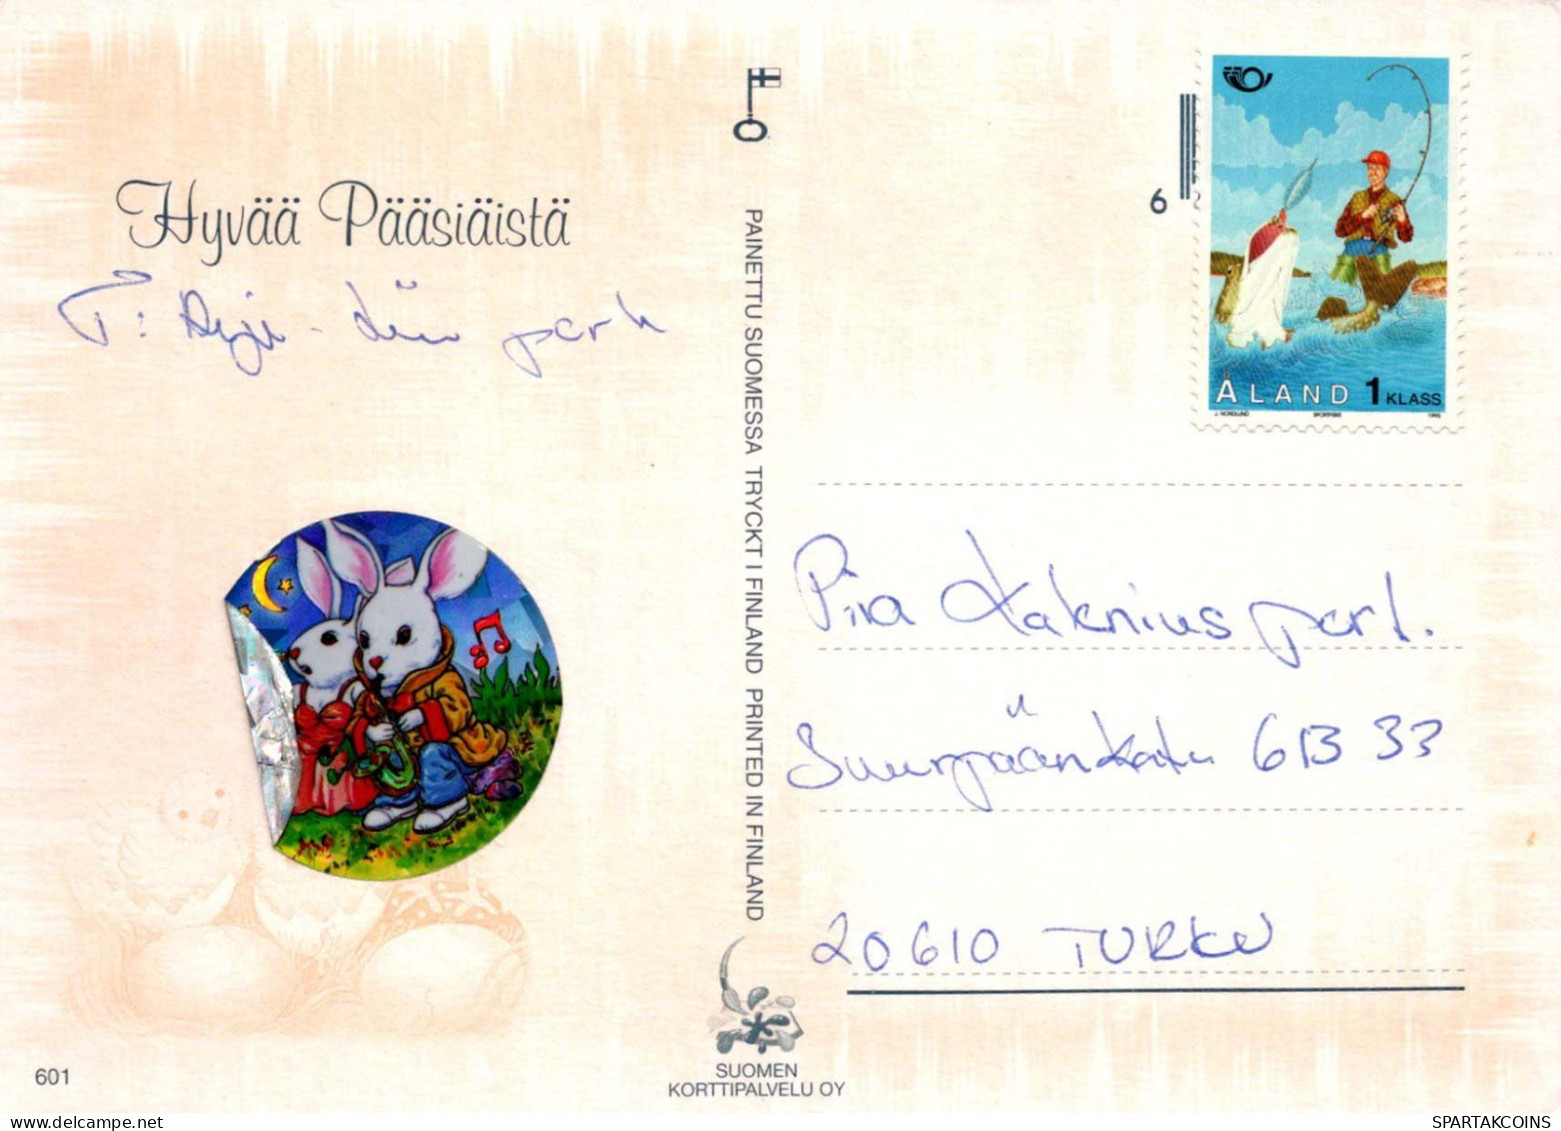 OSTERN HUHN EI Vintage Ansichtskarte Postkarte CPSM #PBO716.DE - Easter